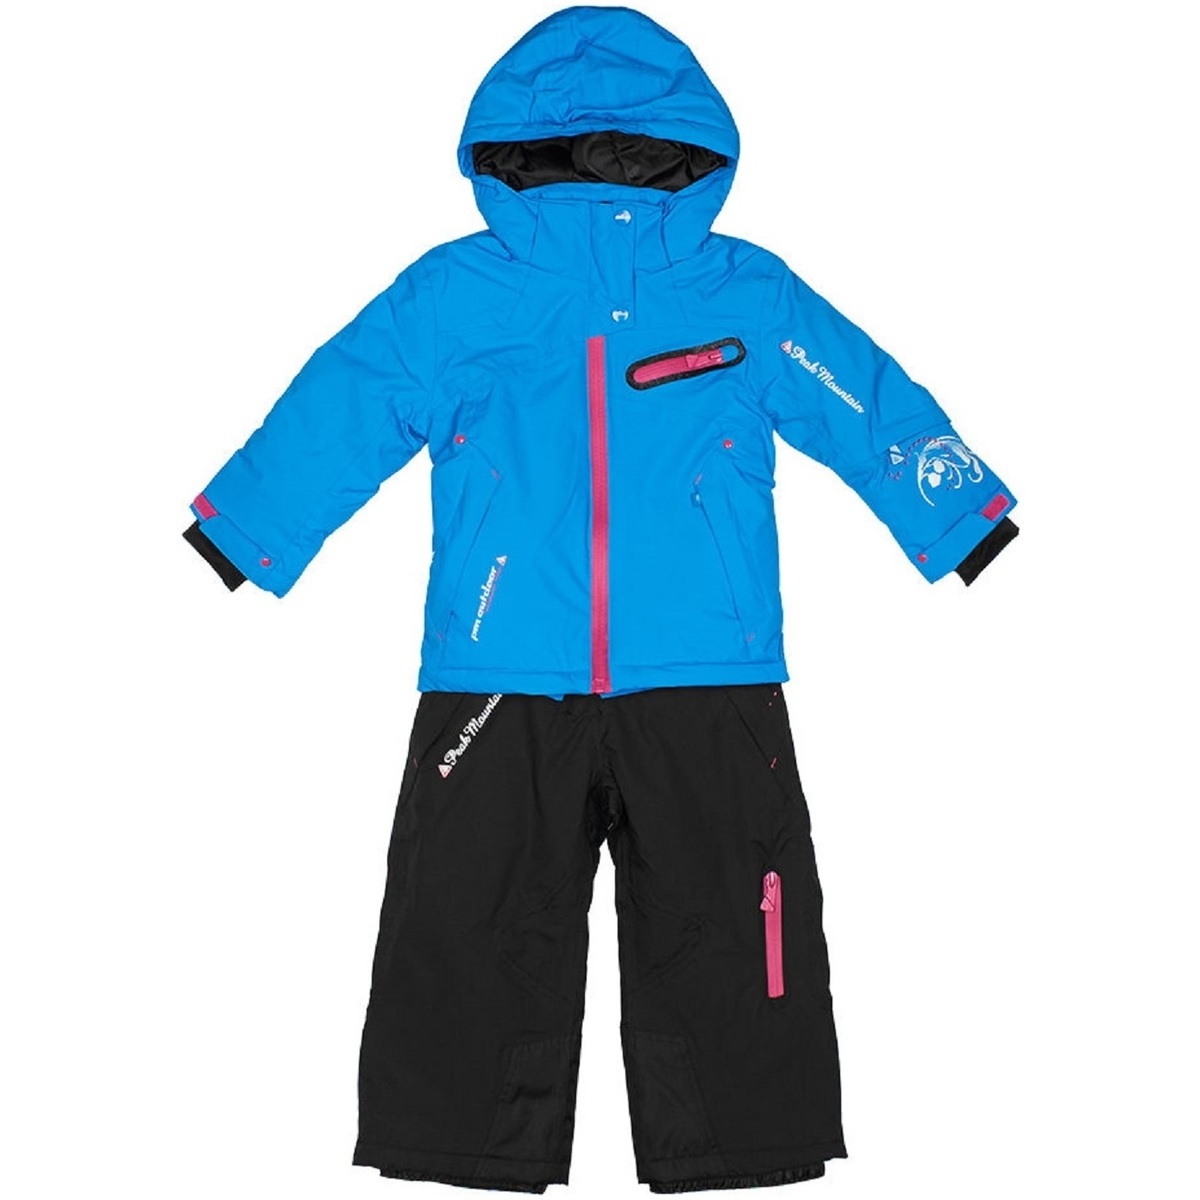 Vêtements Fille Enfant 2-12 ans Ensemble de ski fille FASTEC Bleu